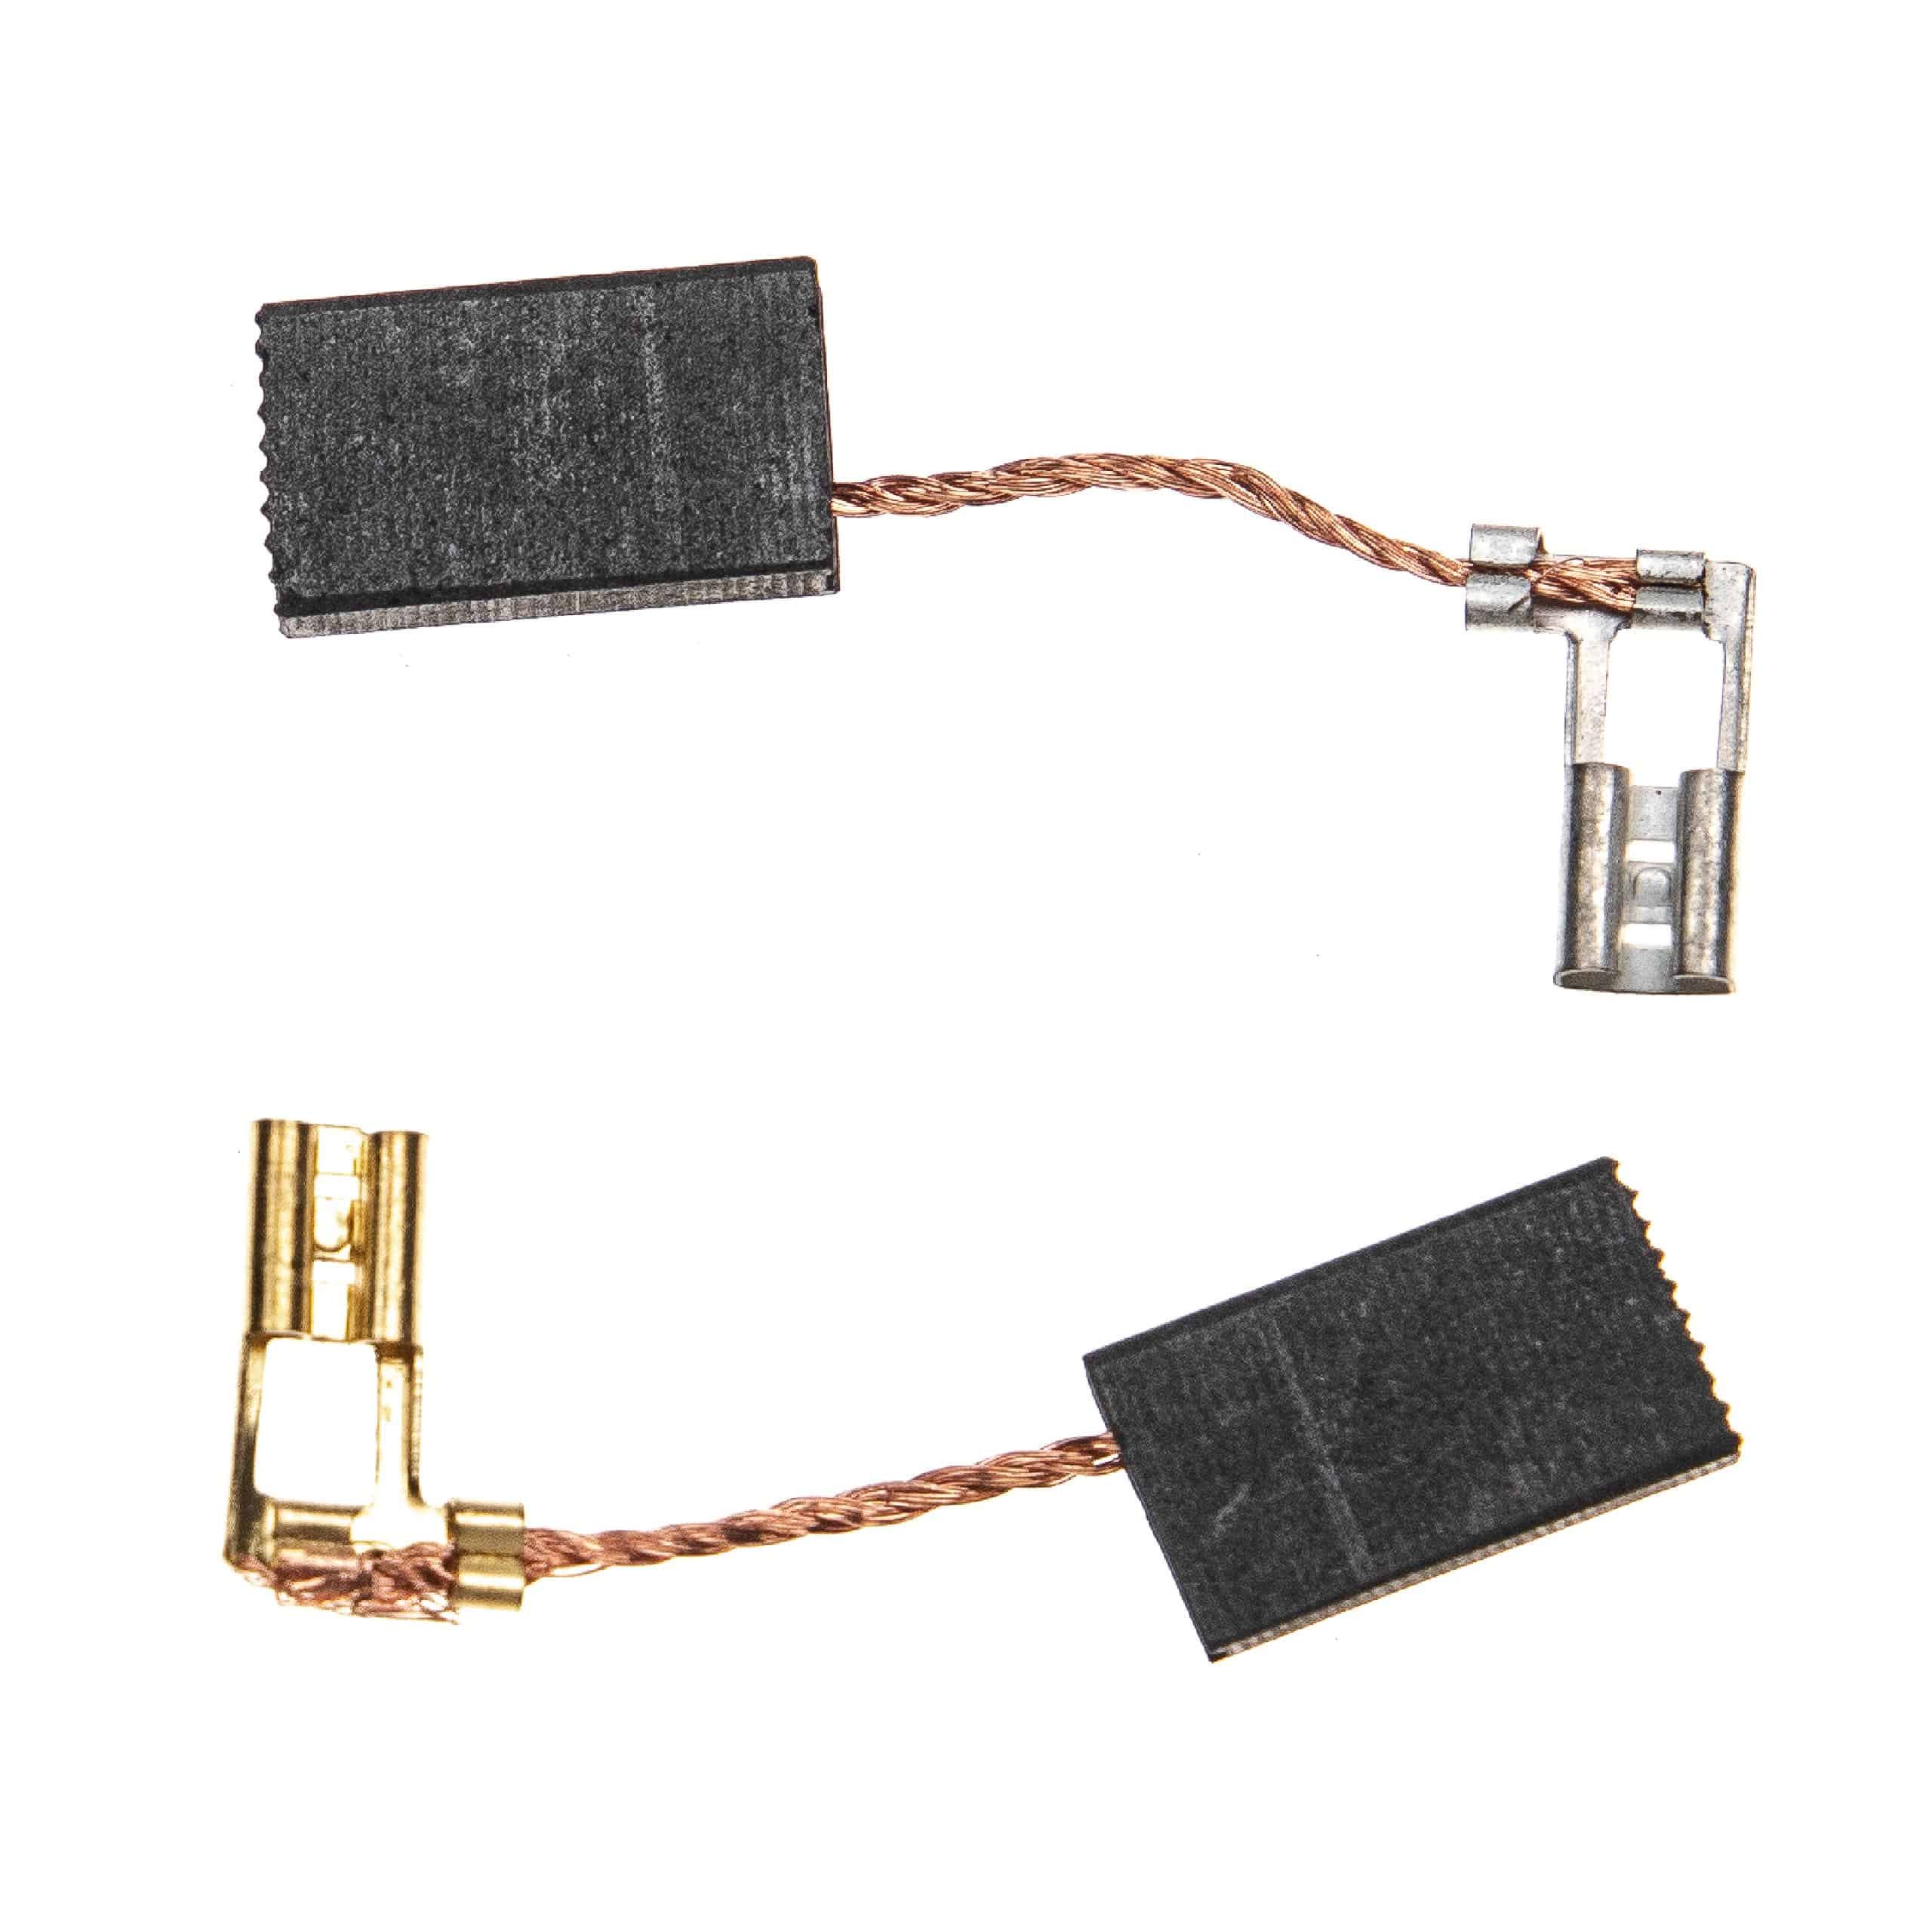 2x Kohlebürsten passend für HiltiSD 5000 Elektrogerät, 18 x 10 x 5 mm